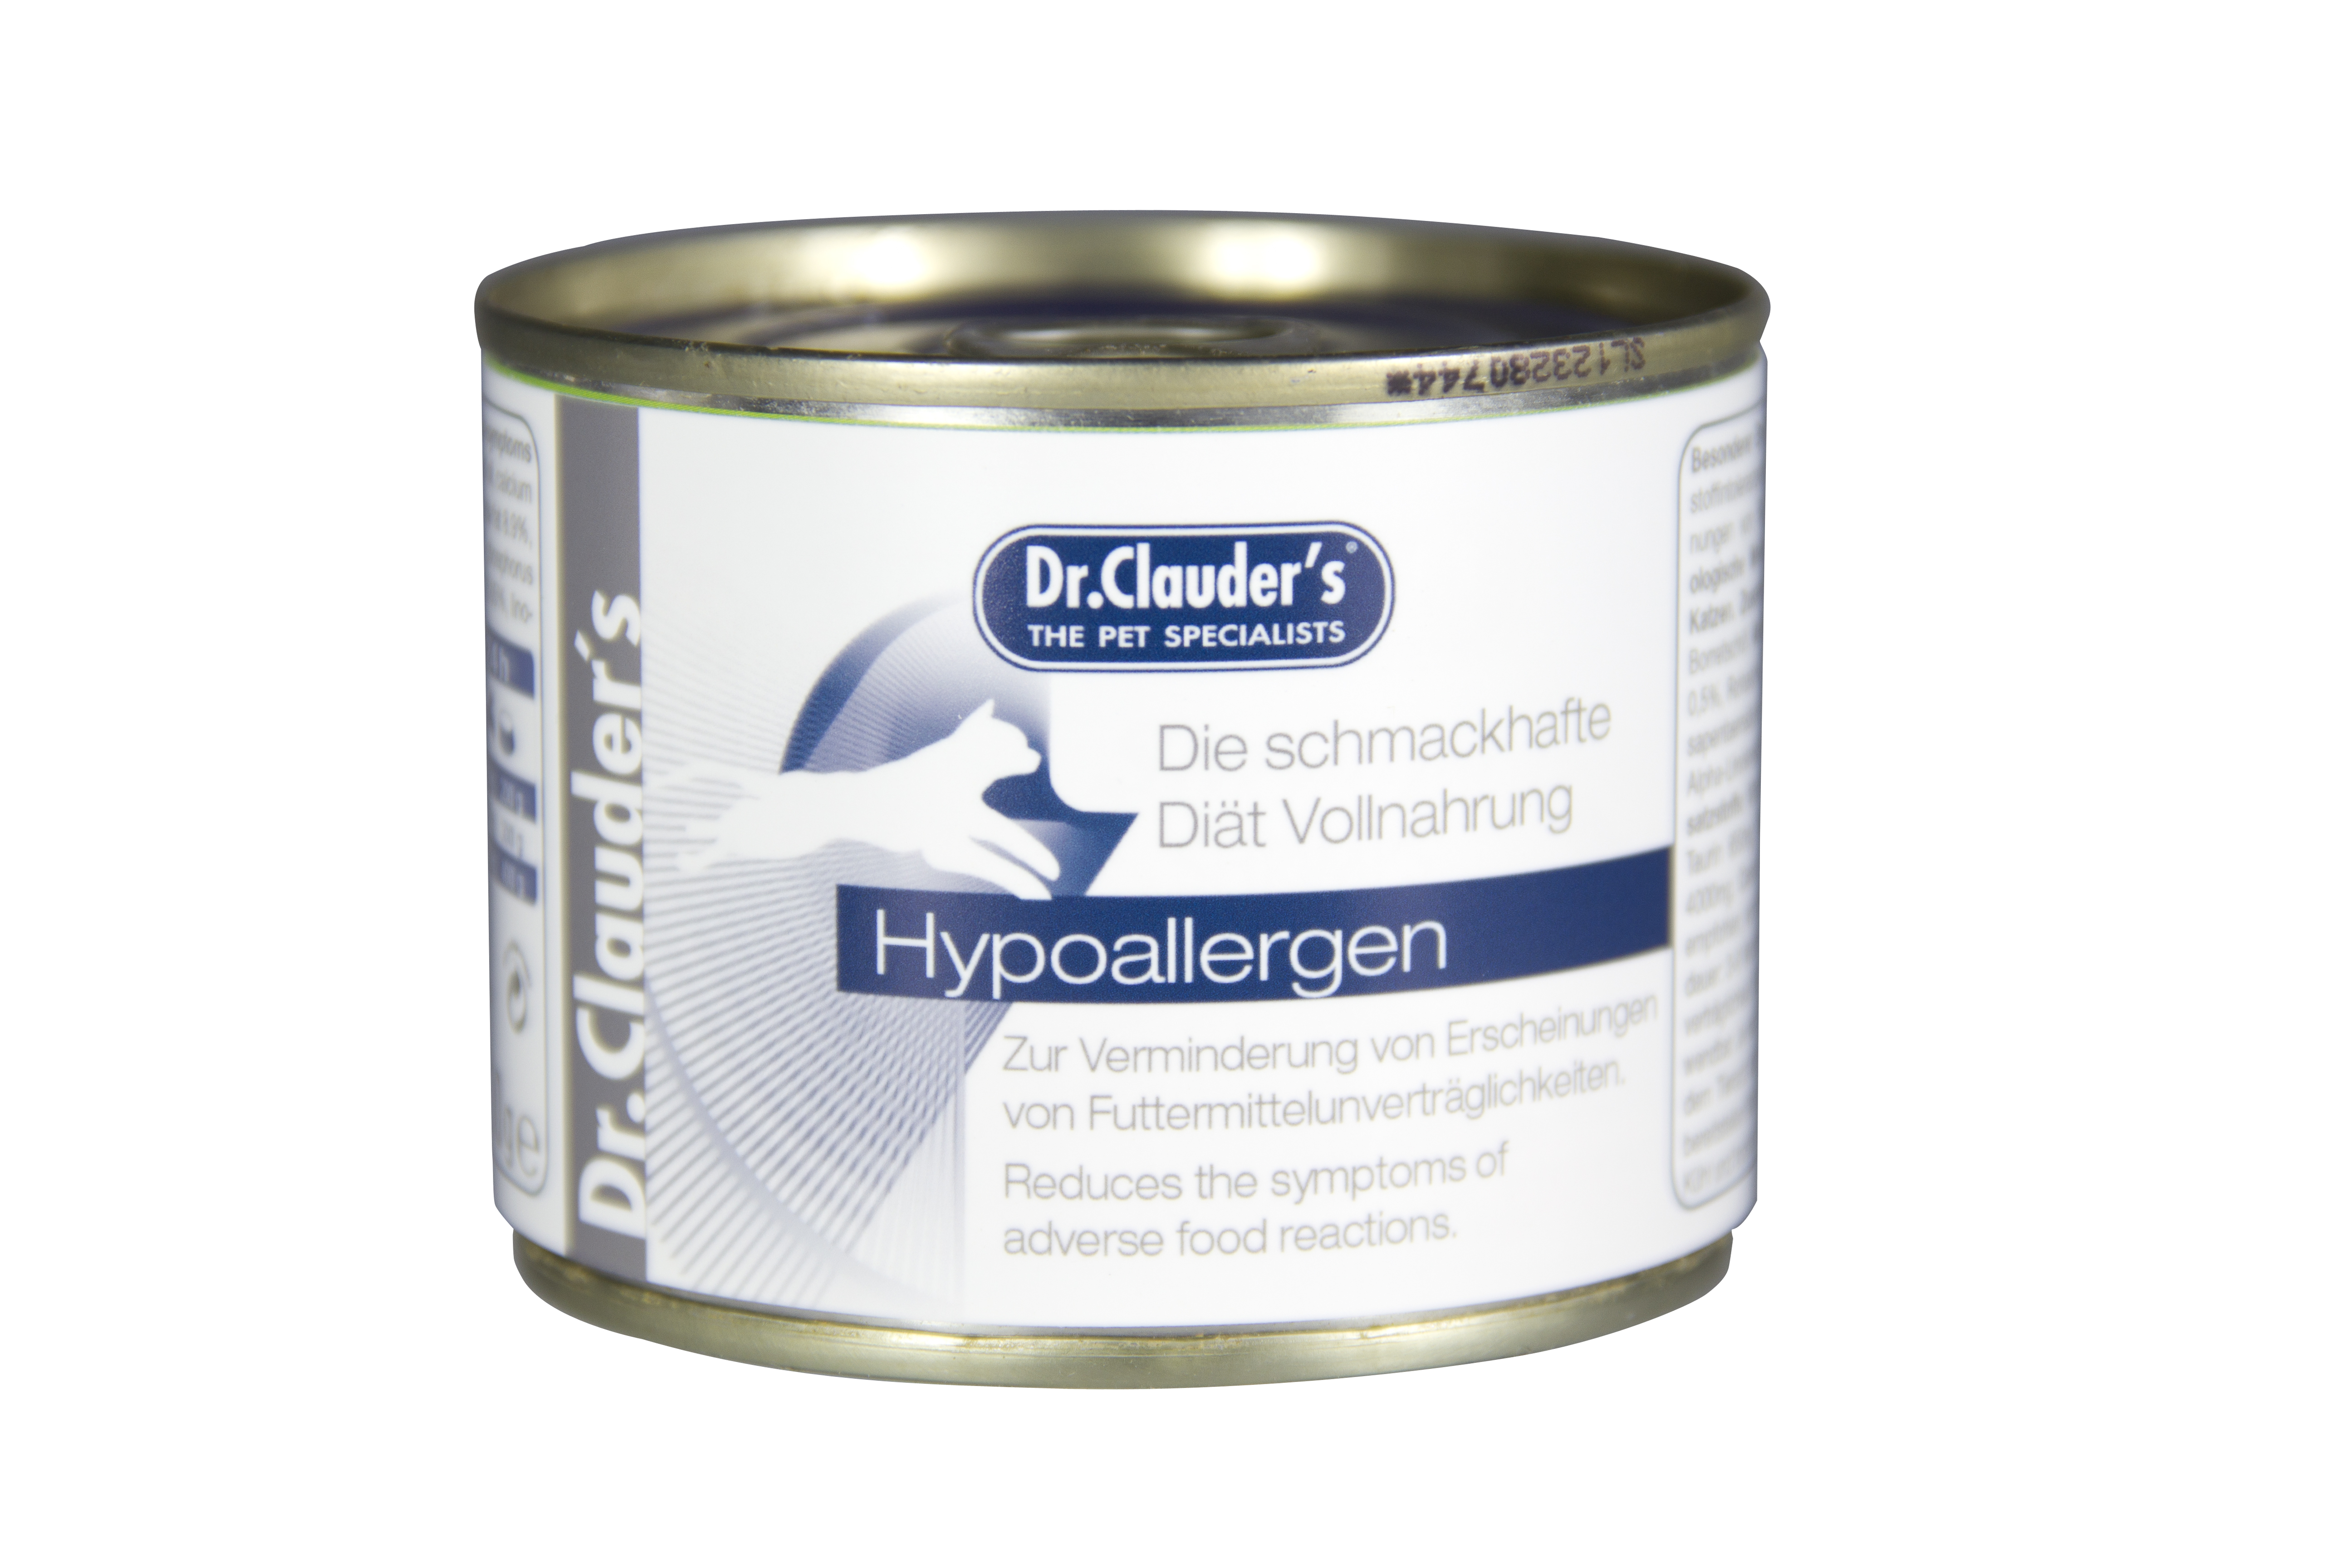 Dr.Clauder's Hypoallergen Diät